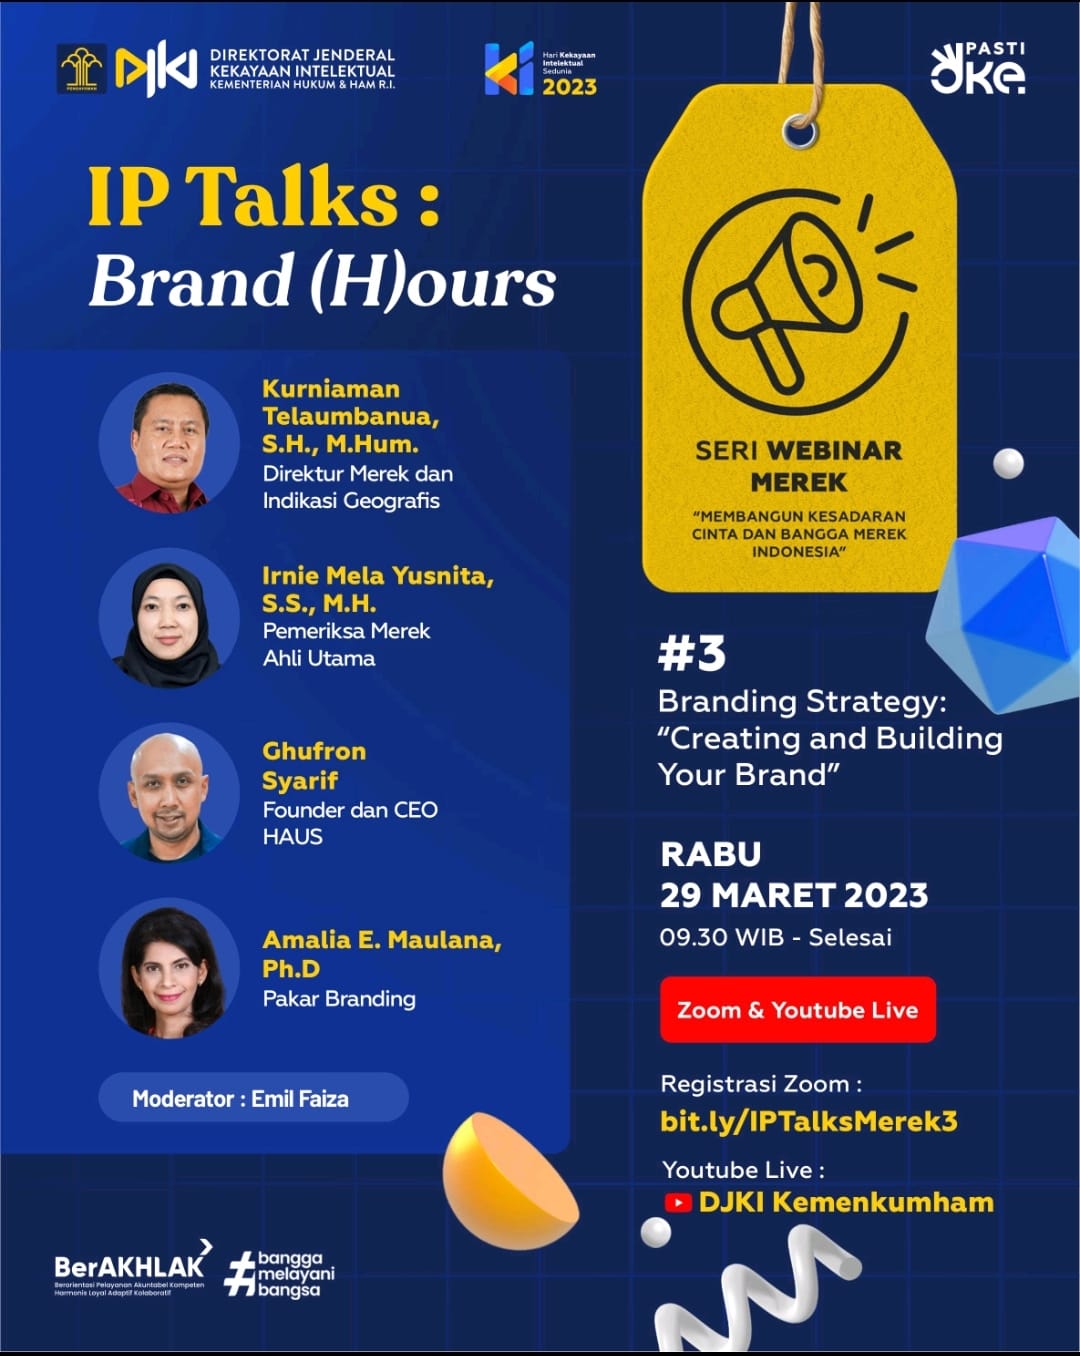 IP TALKS : Brand (H)ours - Membangun Kesadaran Cinta dan Bangga Merek Indonesia